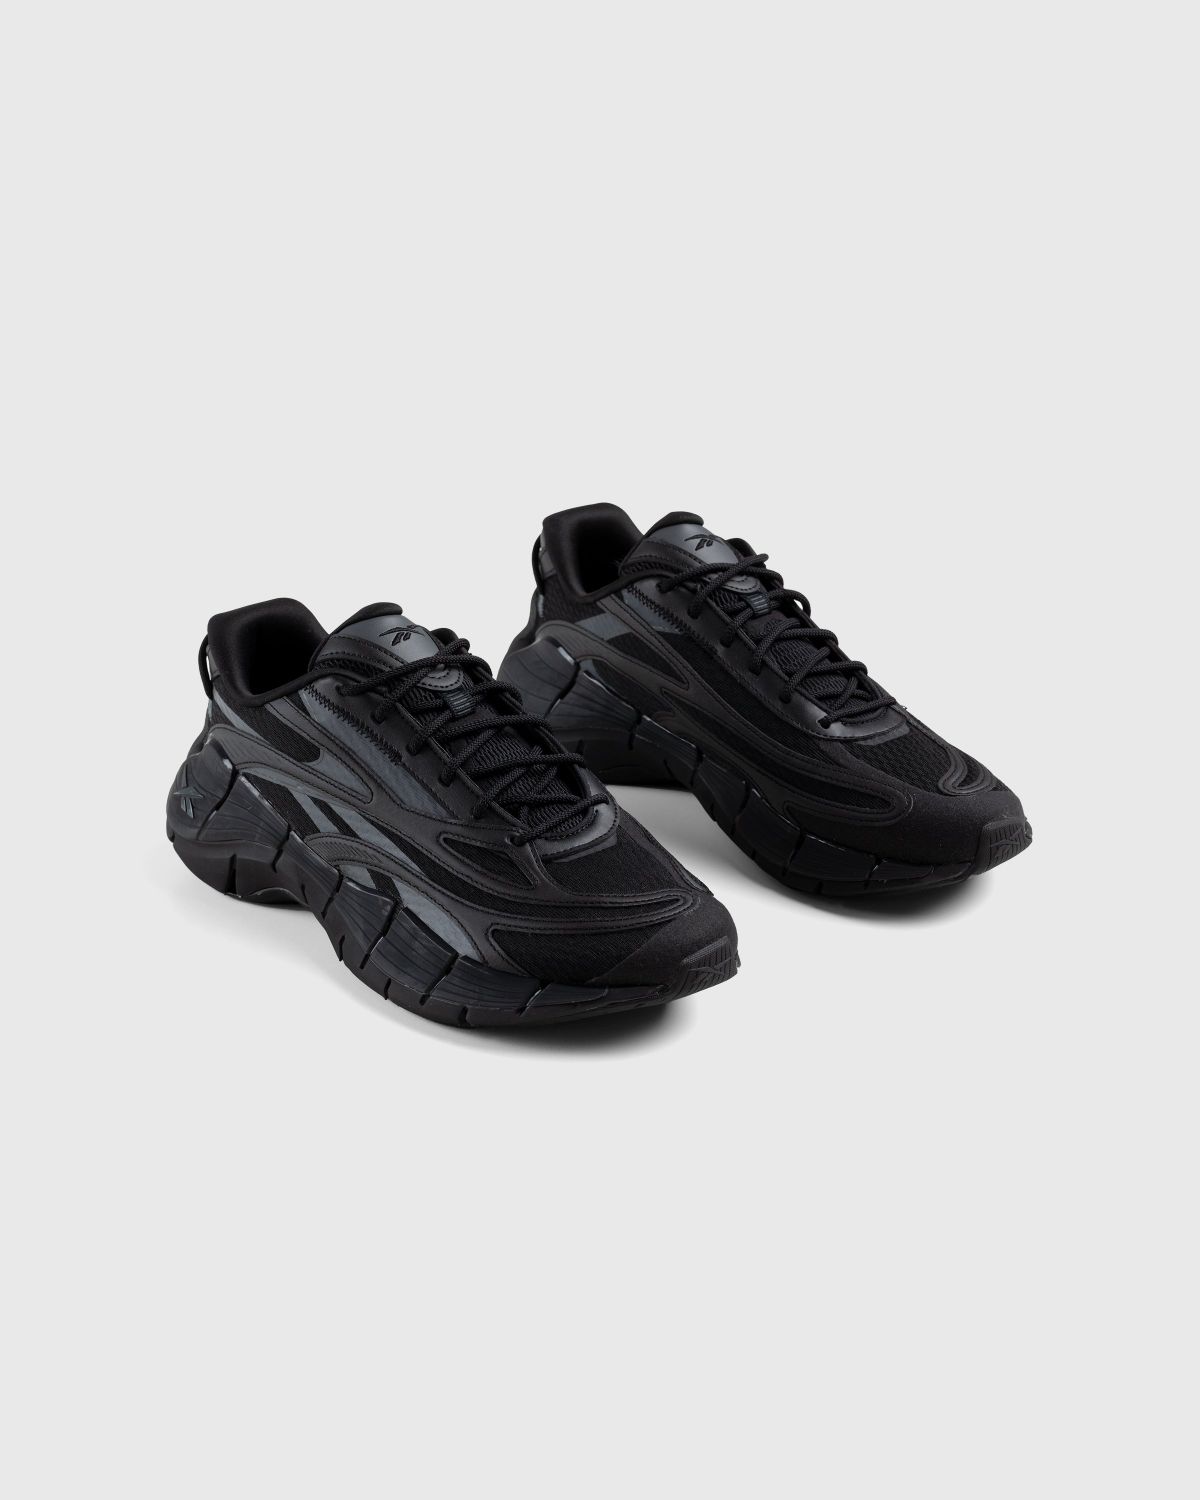 Reebok – Zig Kinetica 2.5 Black - Low Top Sneakers - Black - Image 3